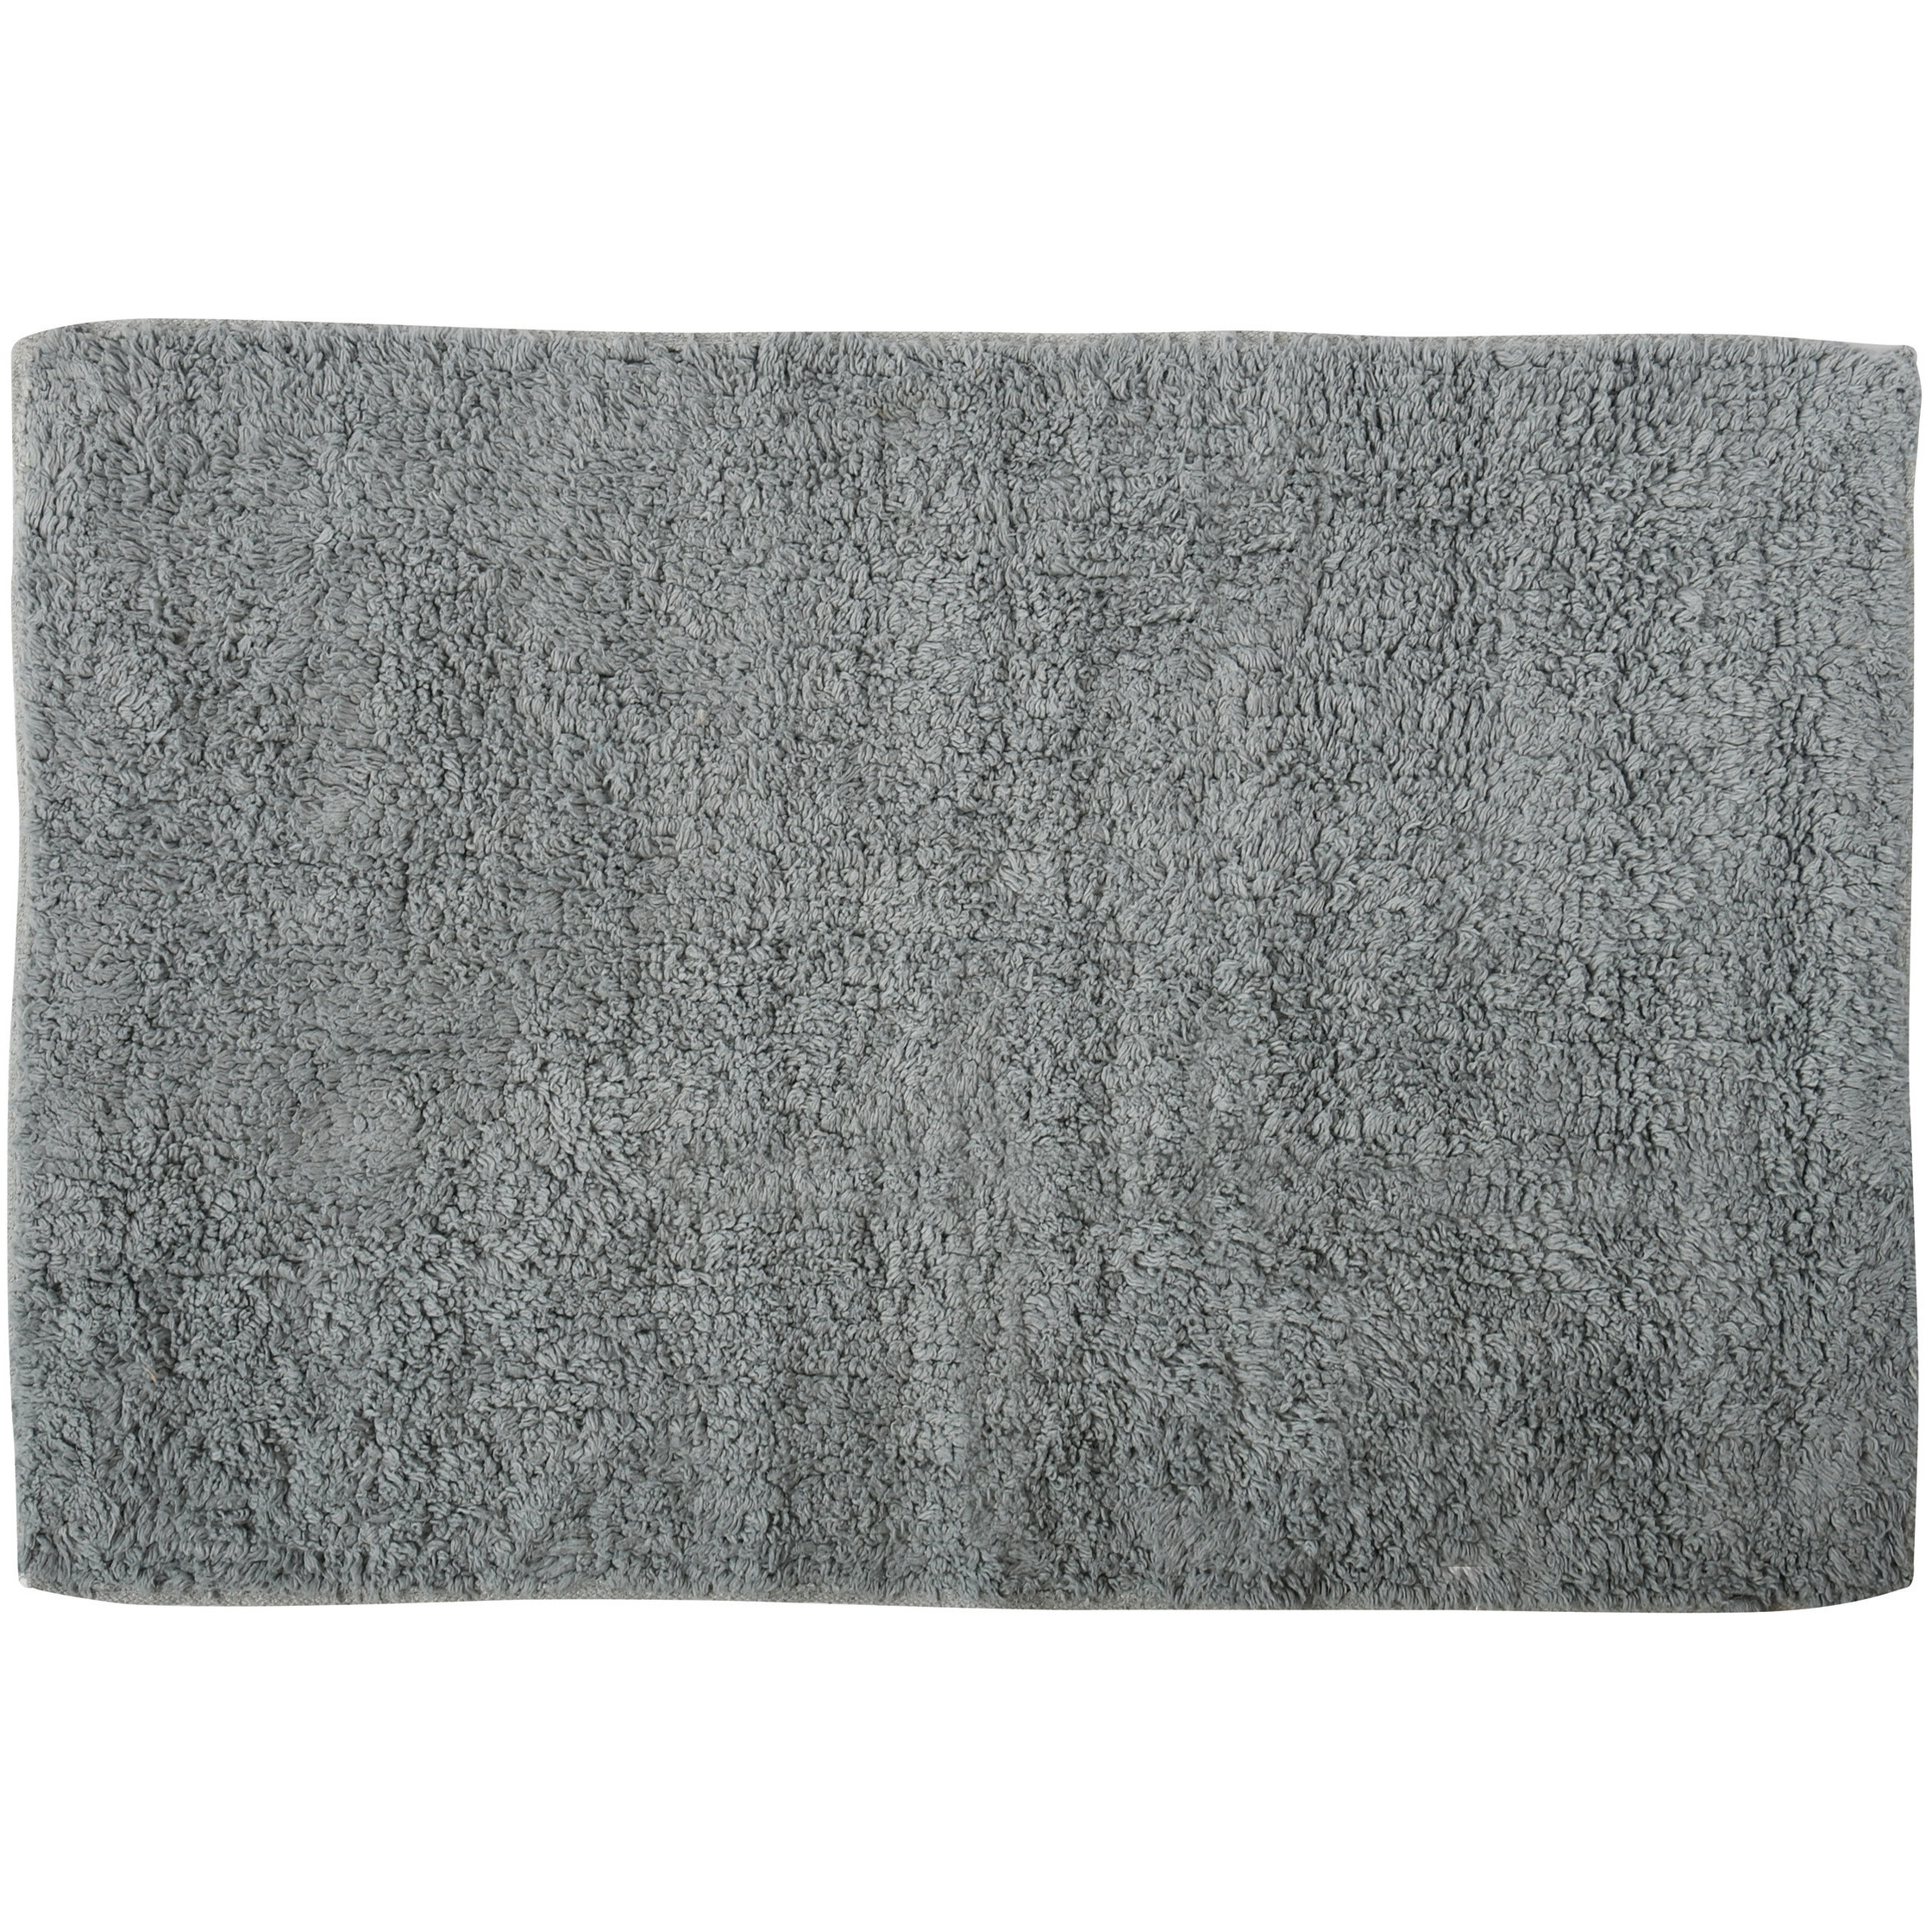 Badkamerkleedje-badmat voor op de vloer grijs 45 x 70 cm